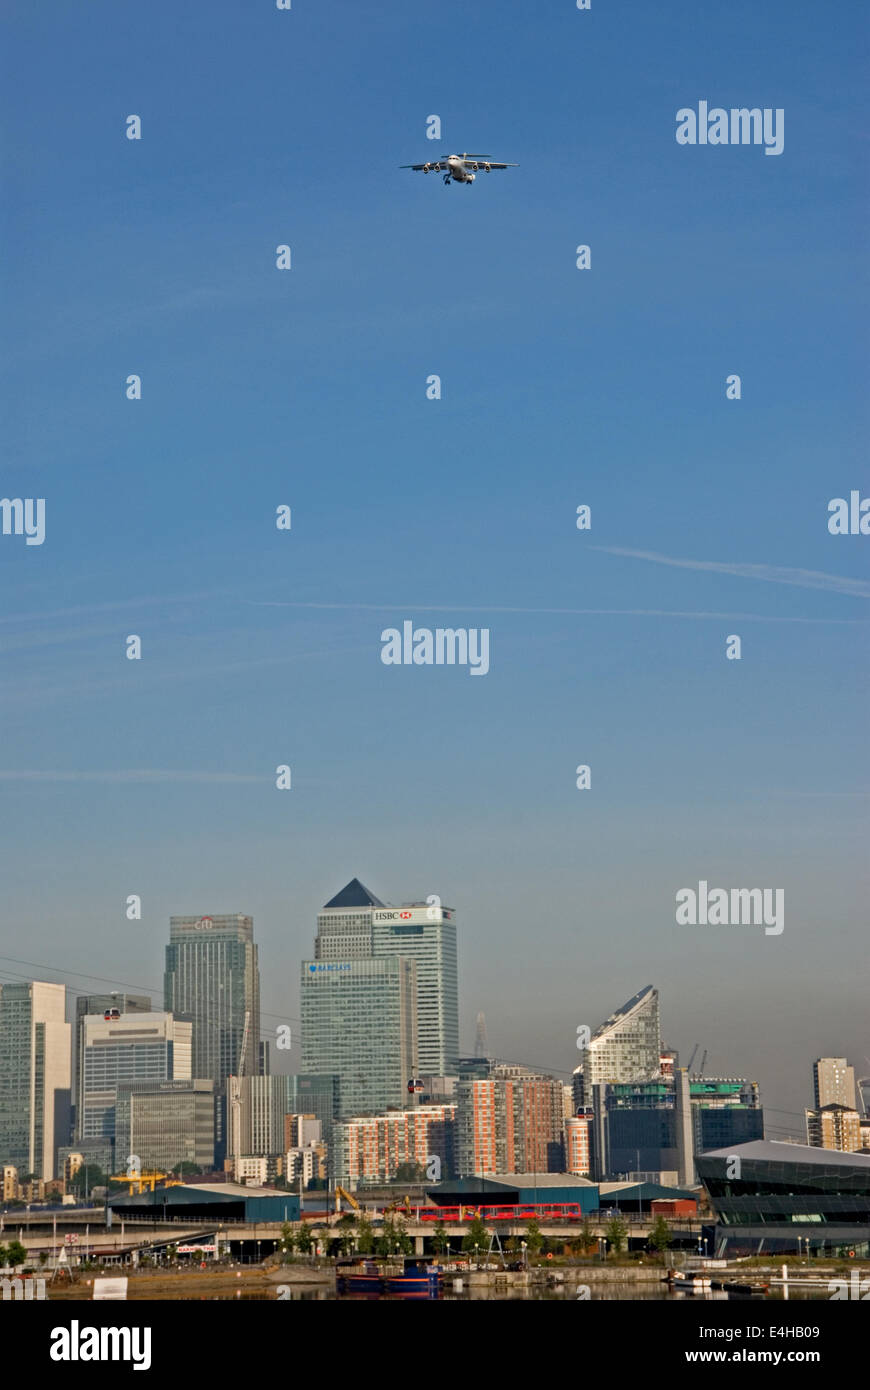 Un avion en direction de l'aéroport de London City passe sur les gratte-ciel du Canary Wharf à l'Est de Londres, avec la pollution de l'air visible dans le ciel Banque D'Images